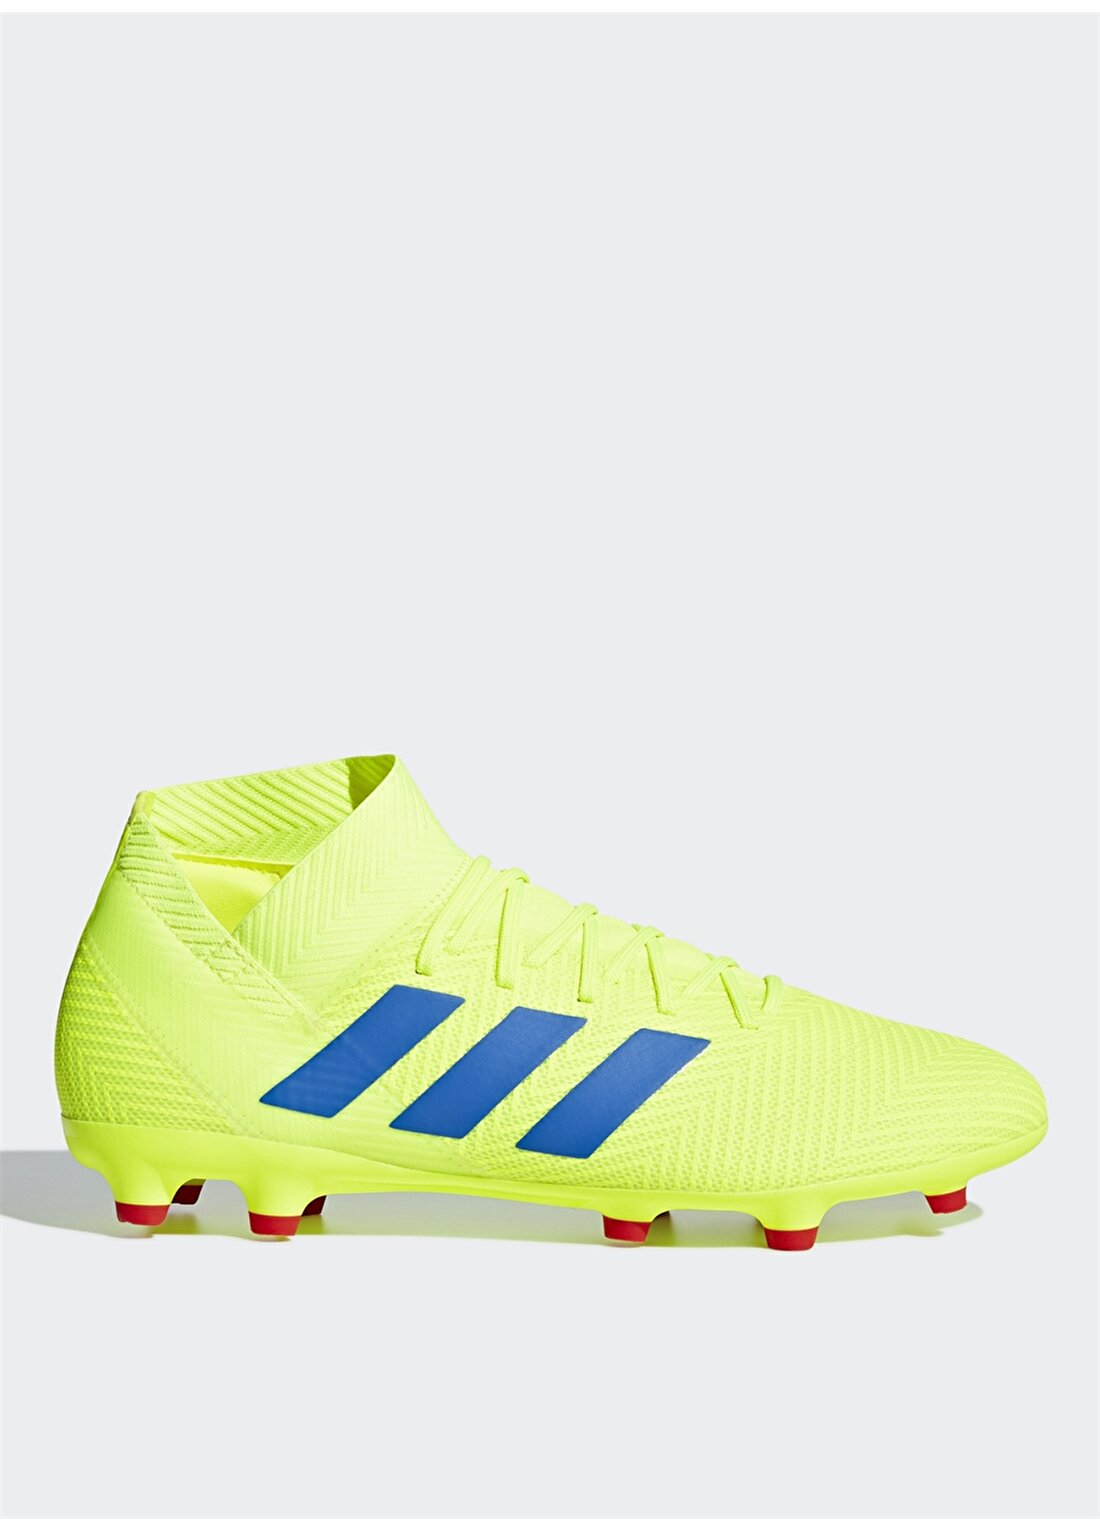 Adidas Nemeziz 18.3 Fxg BB9438 Futbol Ayakkabısı